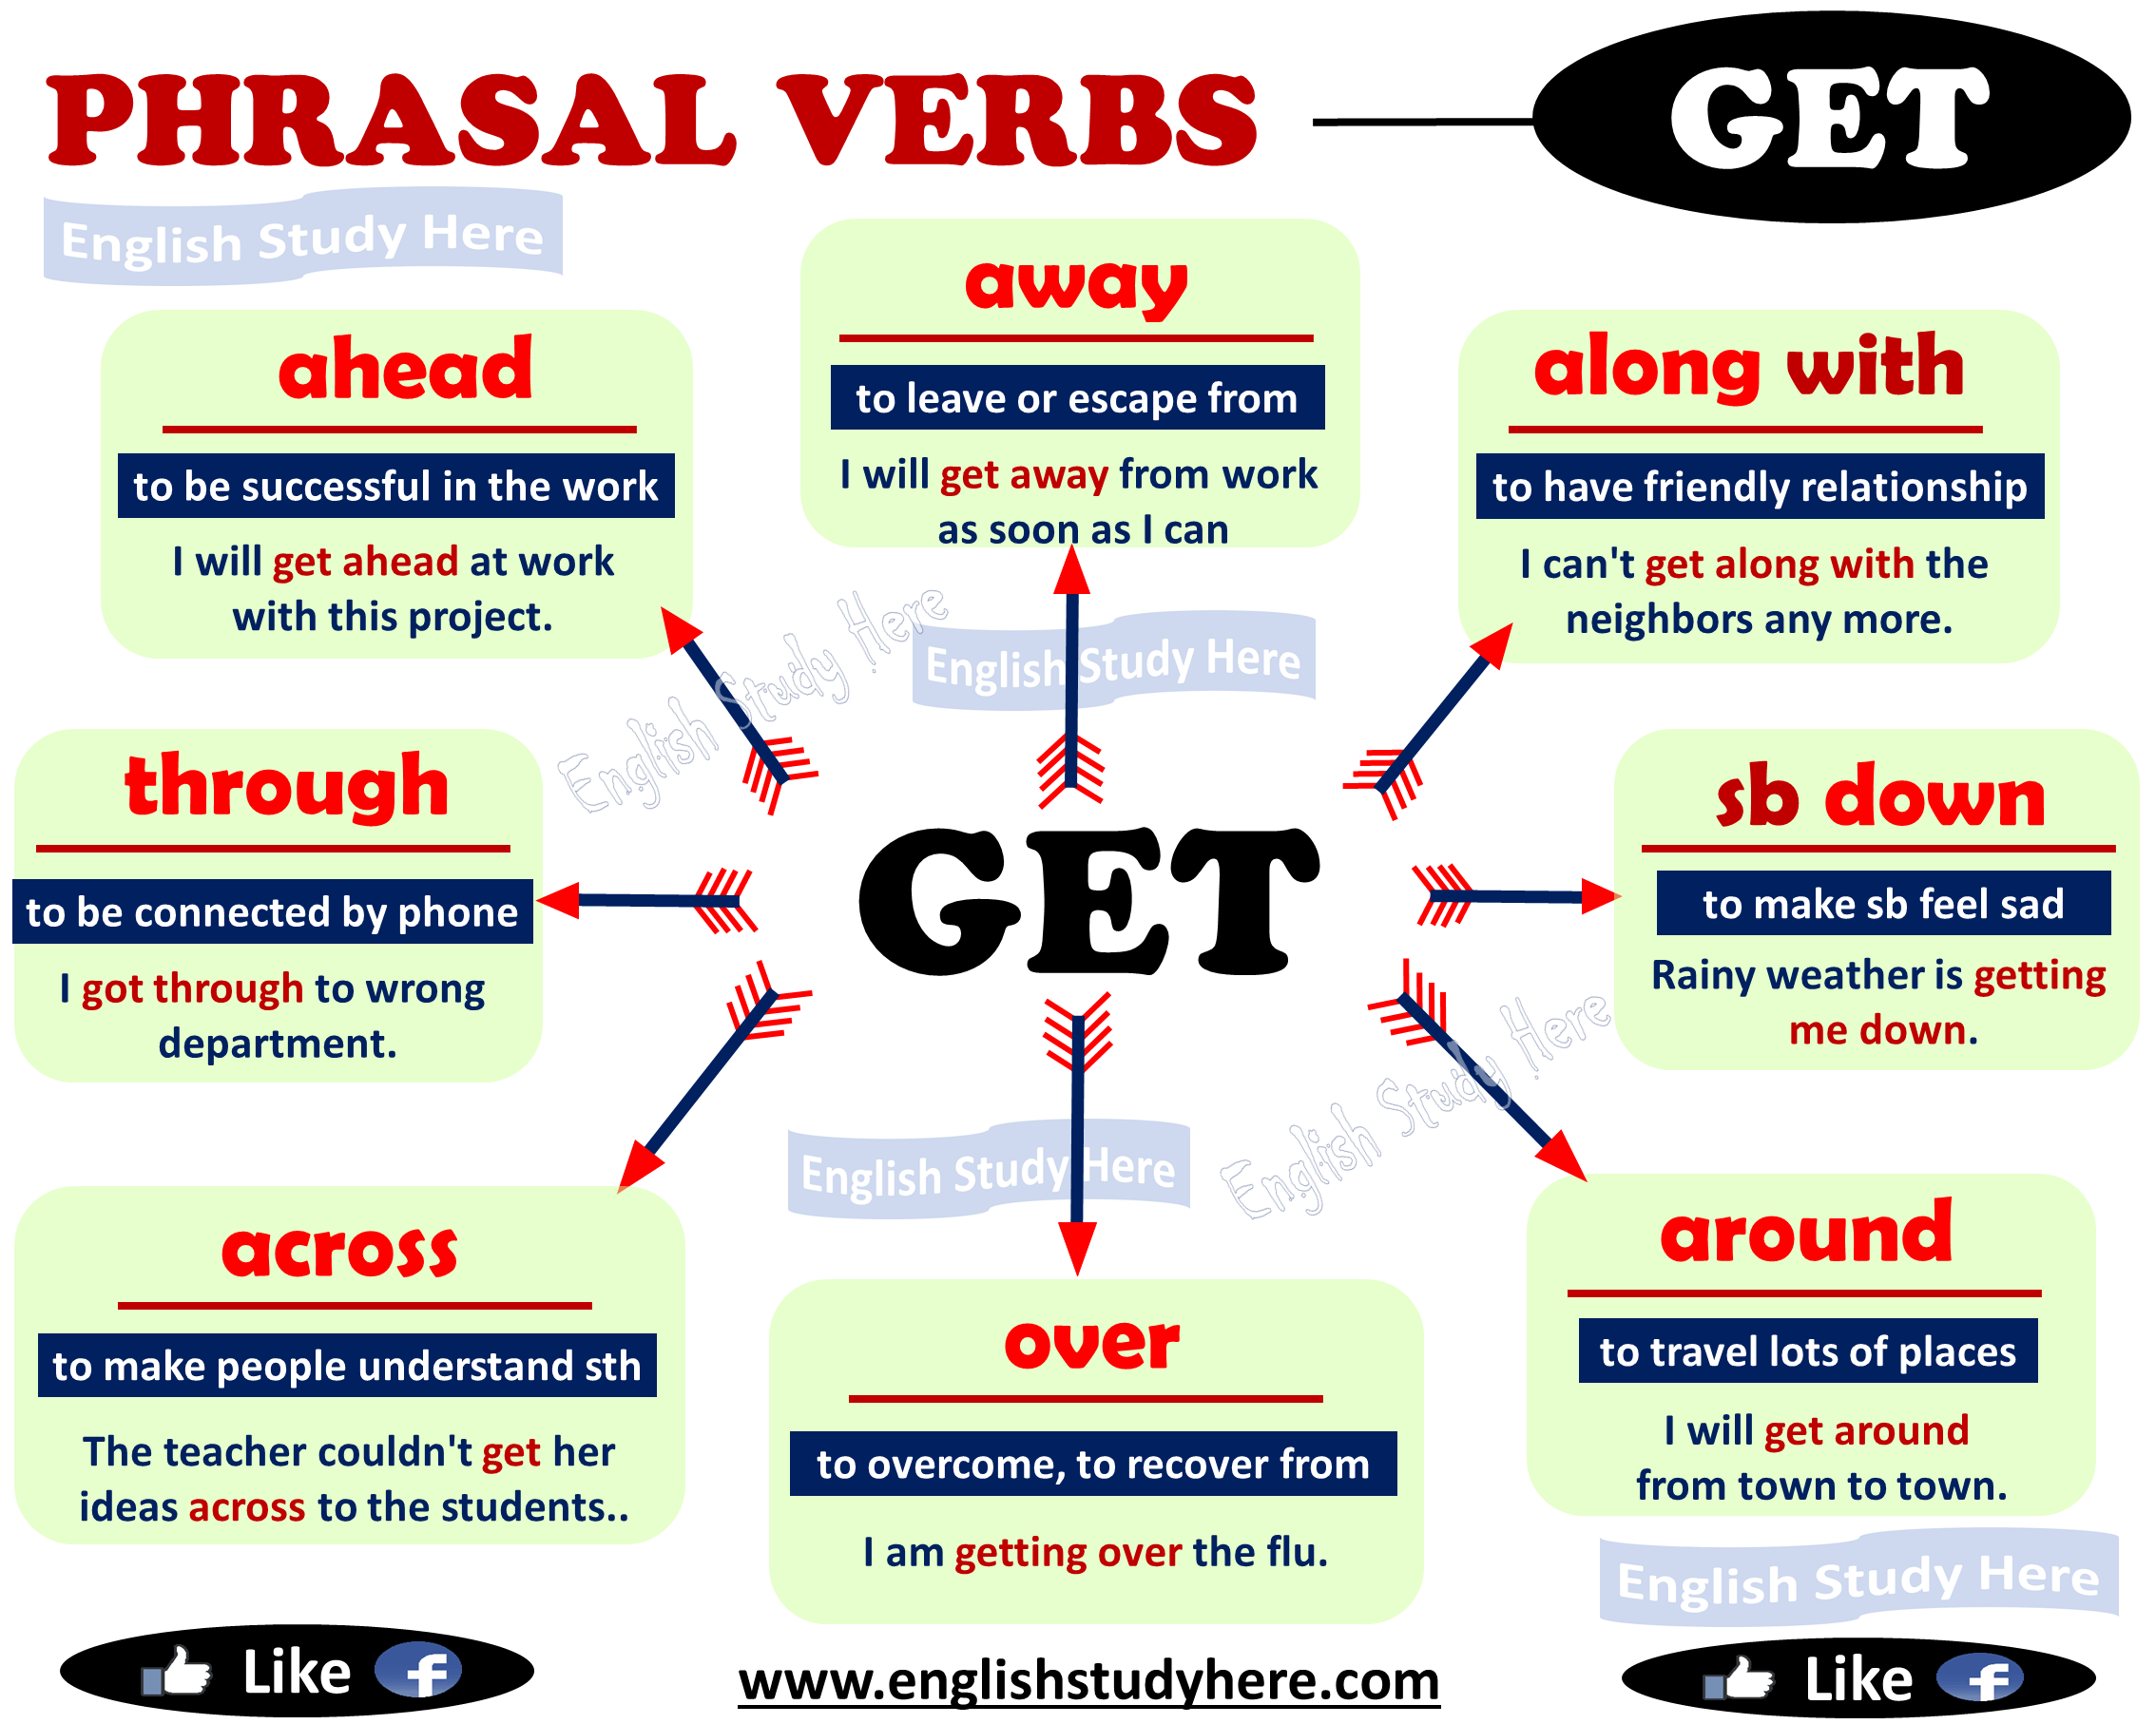 Фразовые глаголы round. Phrasal verbs в английском языке. Фразовые глаголы в английском get. Фразовый глагол to get в английском языке. Английские фразовые глаголы.